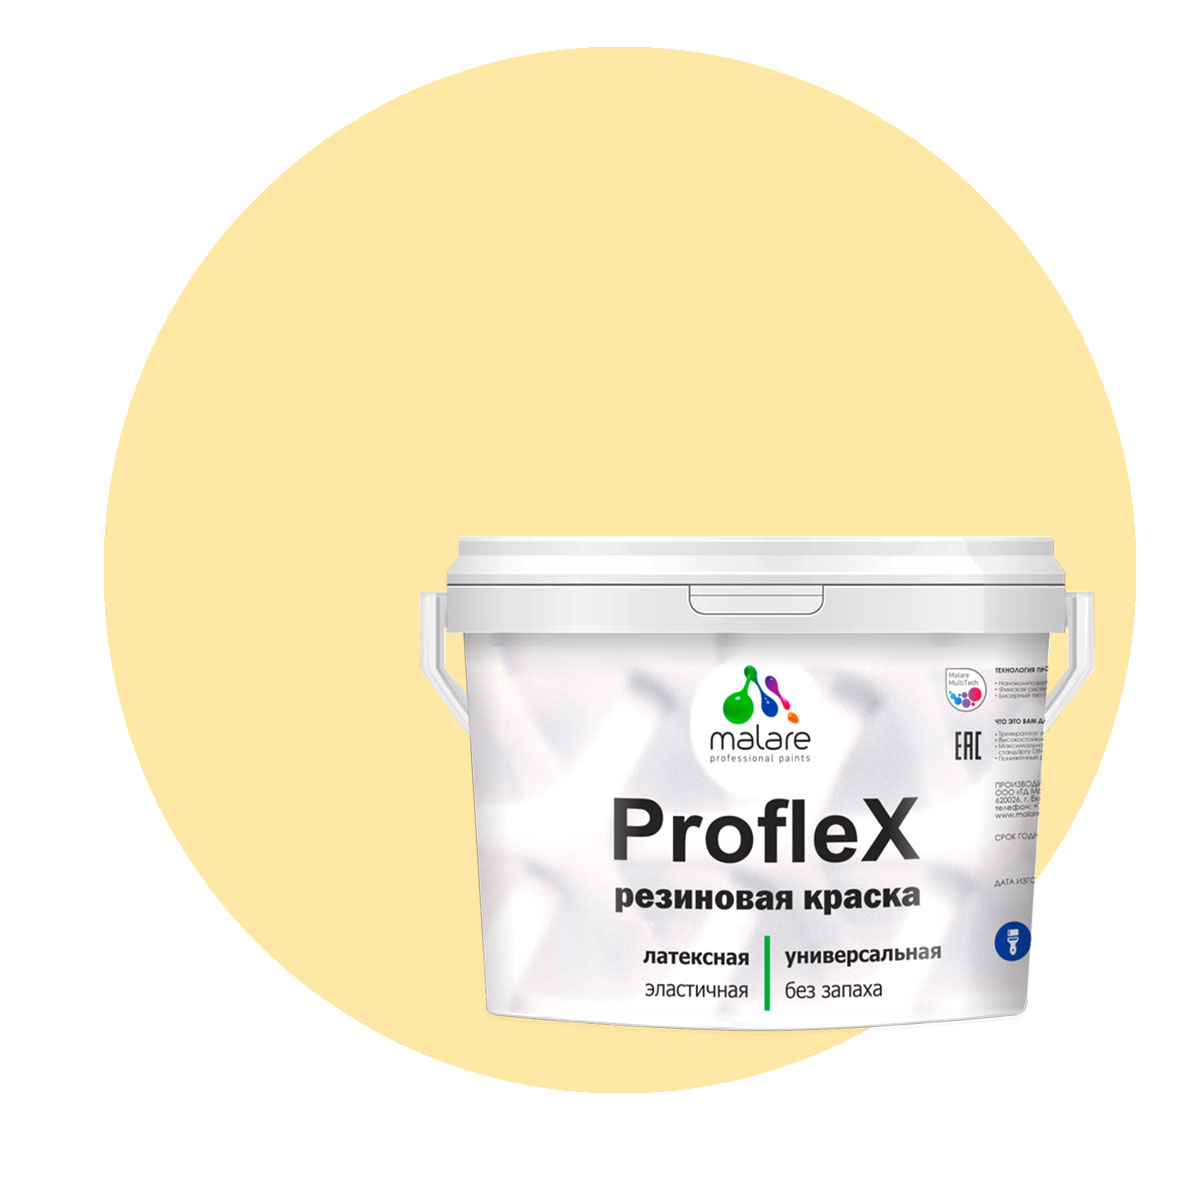 Краска Malare ProfleX для фасадов, интерьера, мебели, тропический макарун, 10 кг. щелочной очиститель фасадов зданий plex